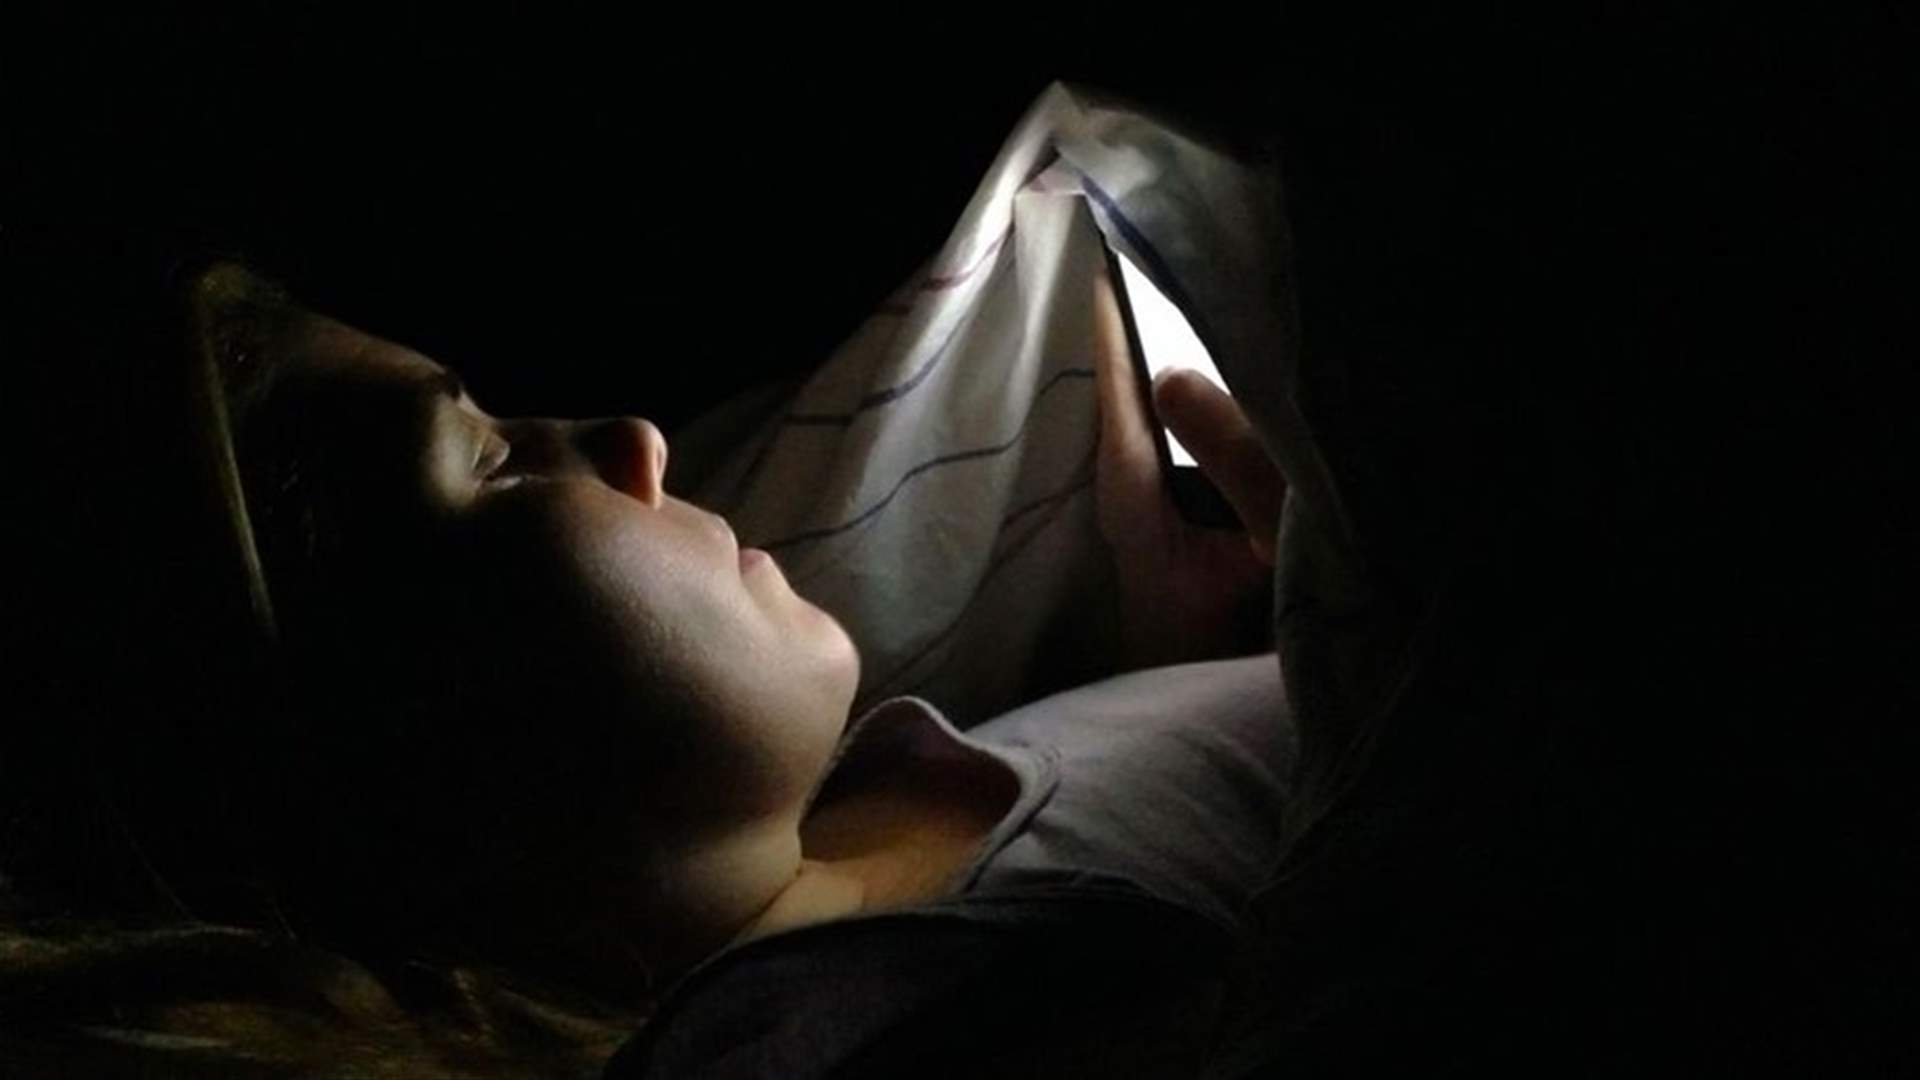 استخدام الهواتف الذكيّة في الظلام يُصيب بالعمى المؤقت